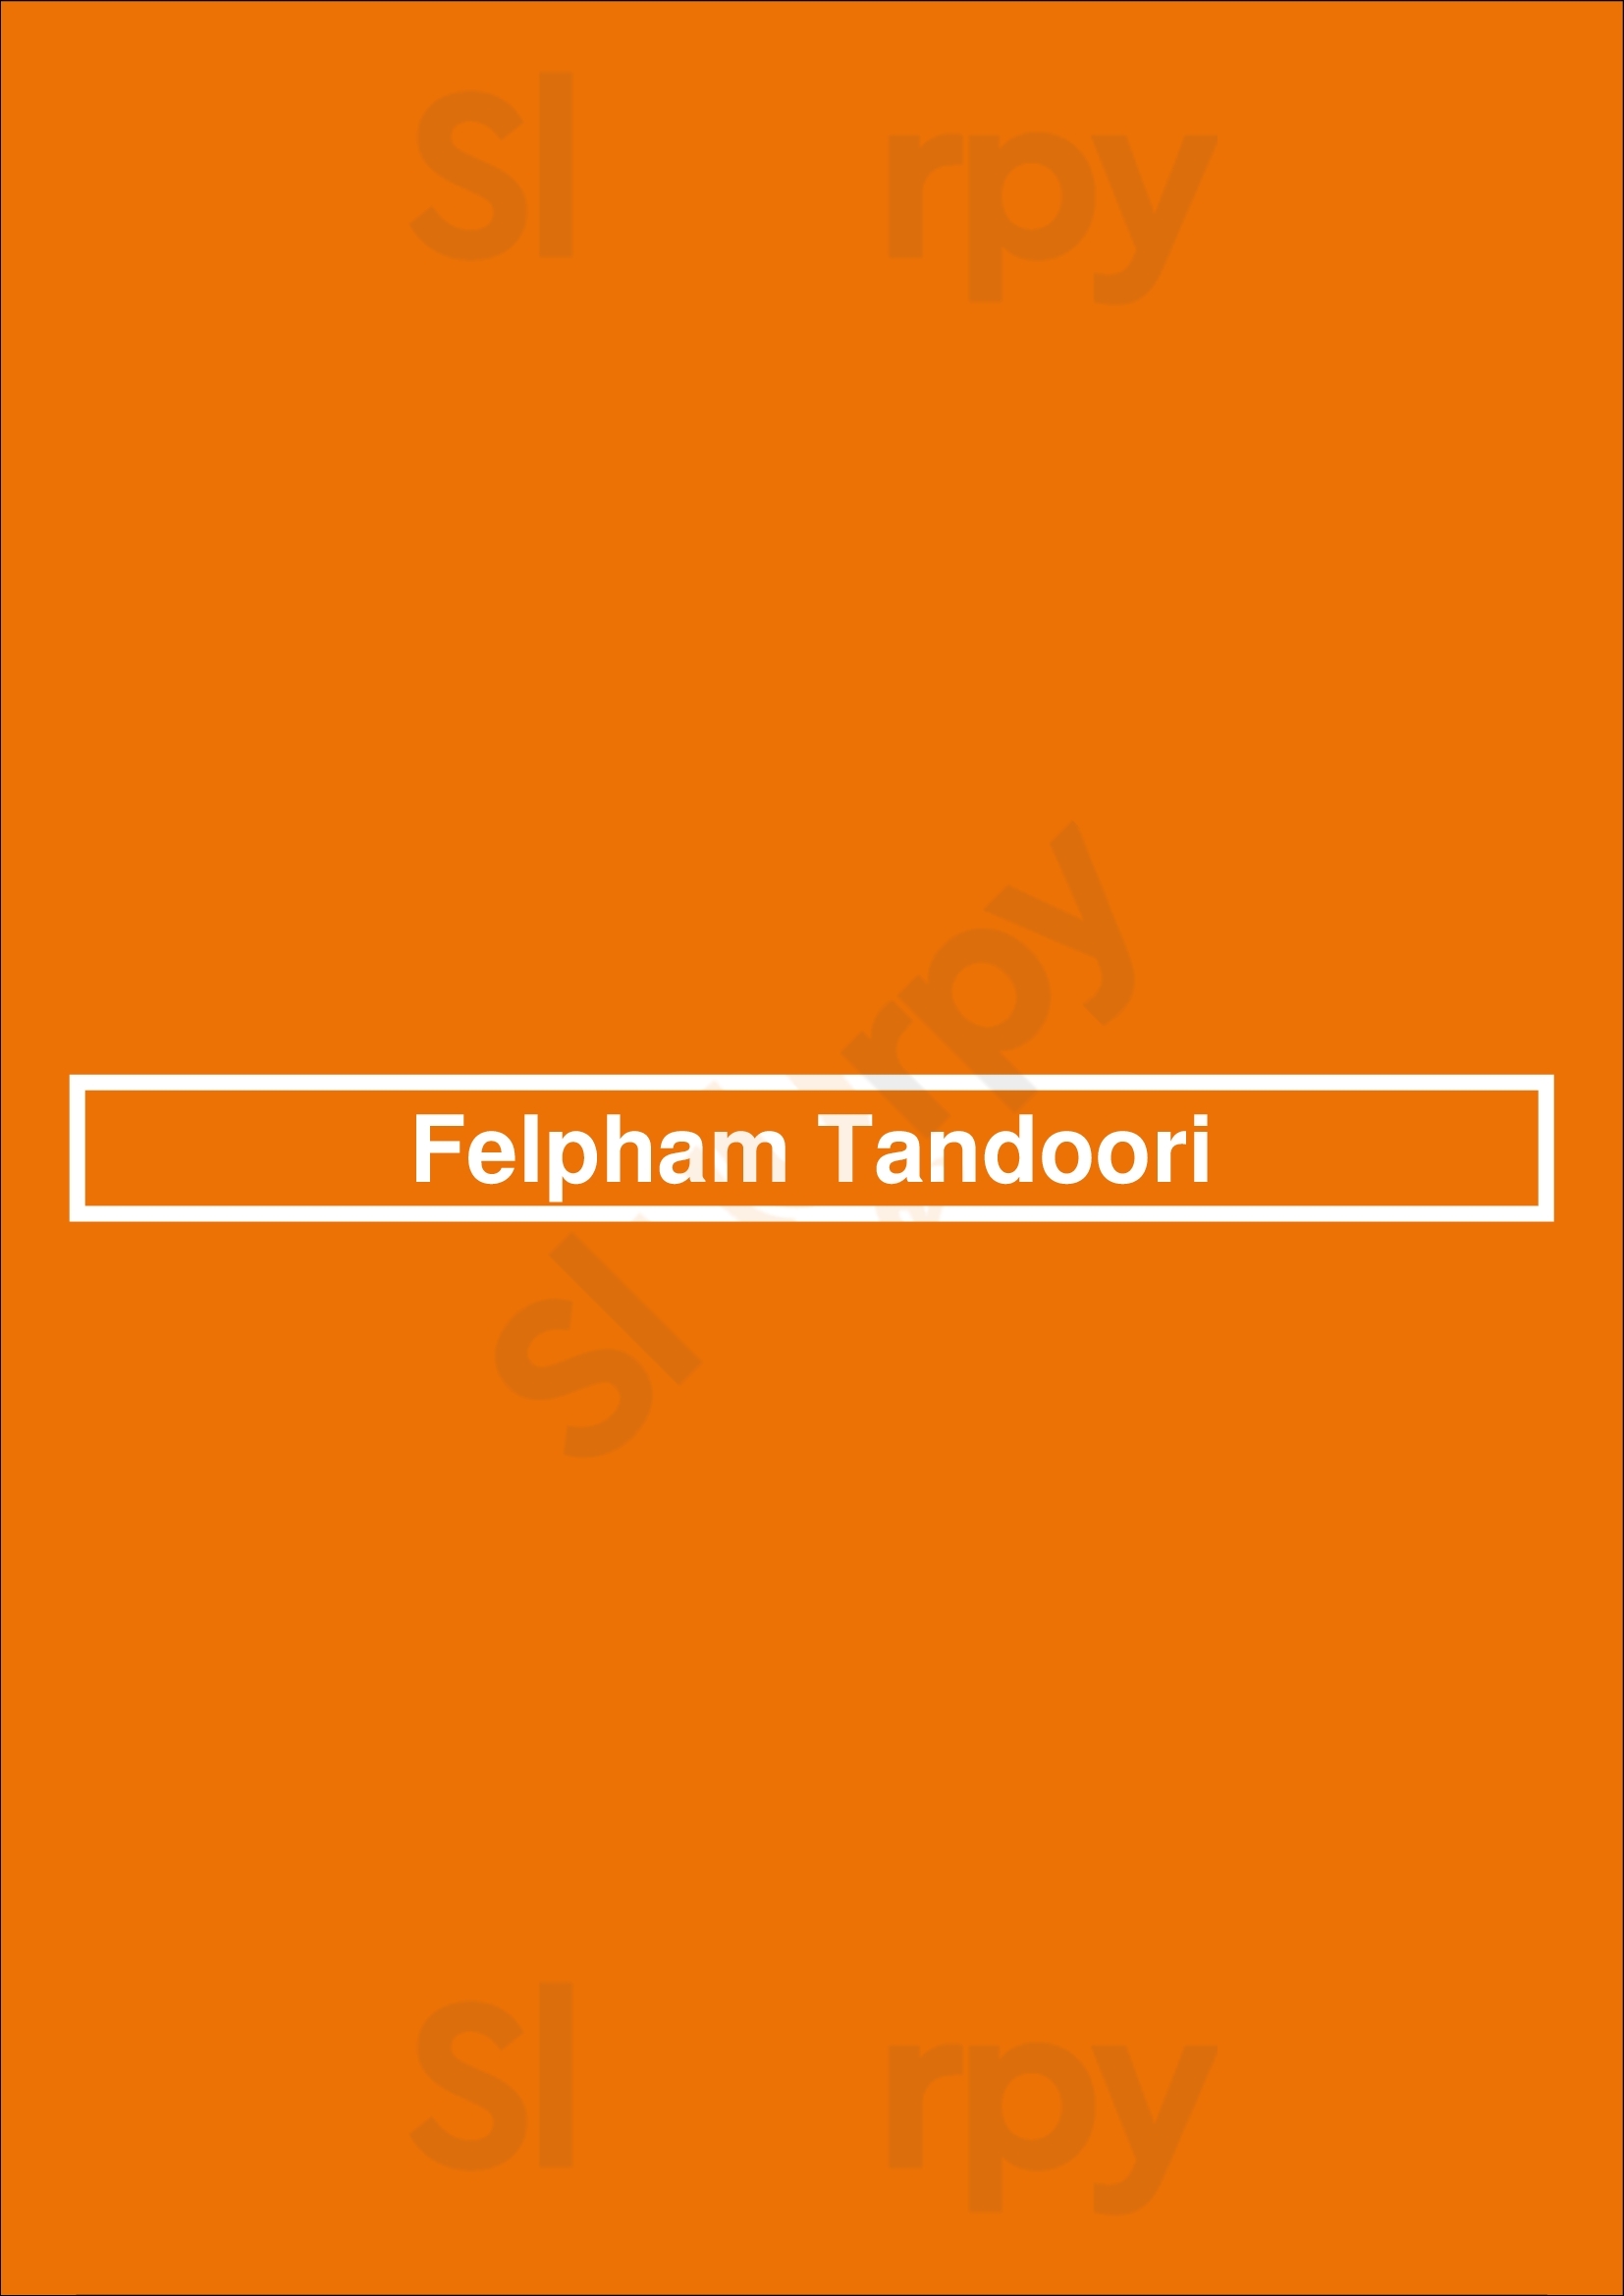 Felpham Tandoori Bognor Regis Menu - 1